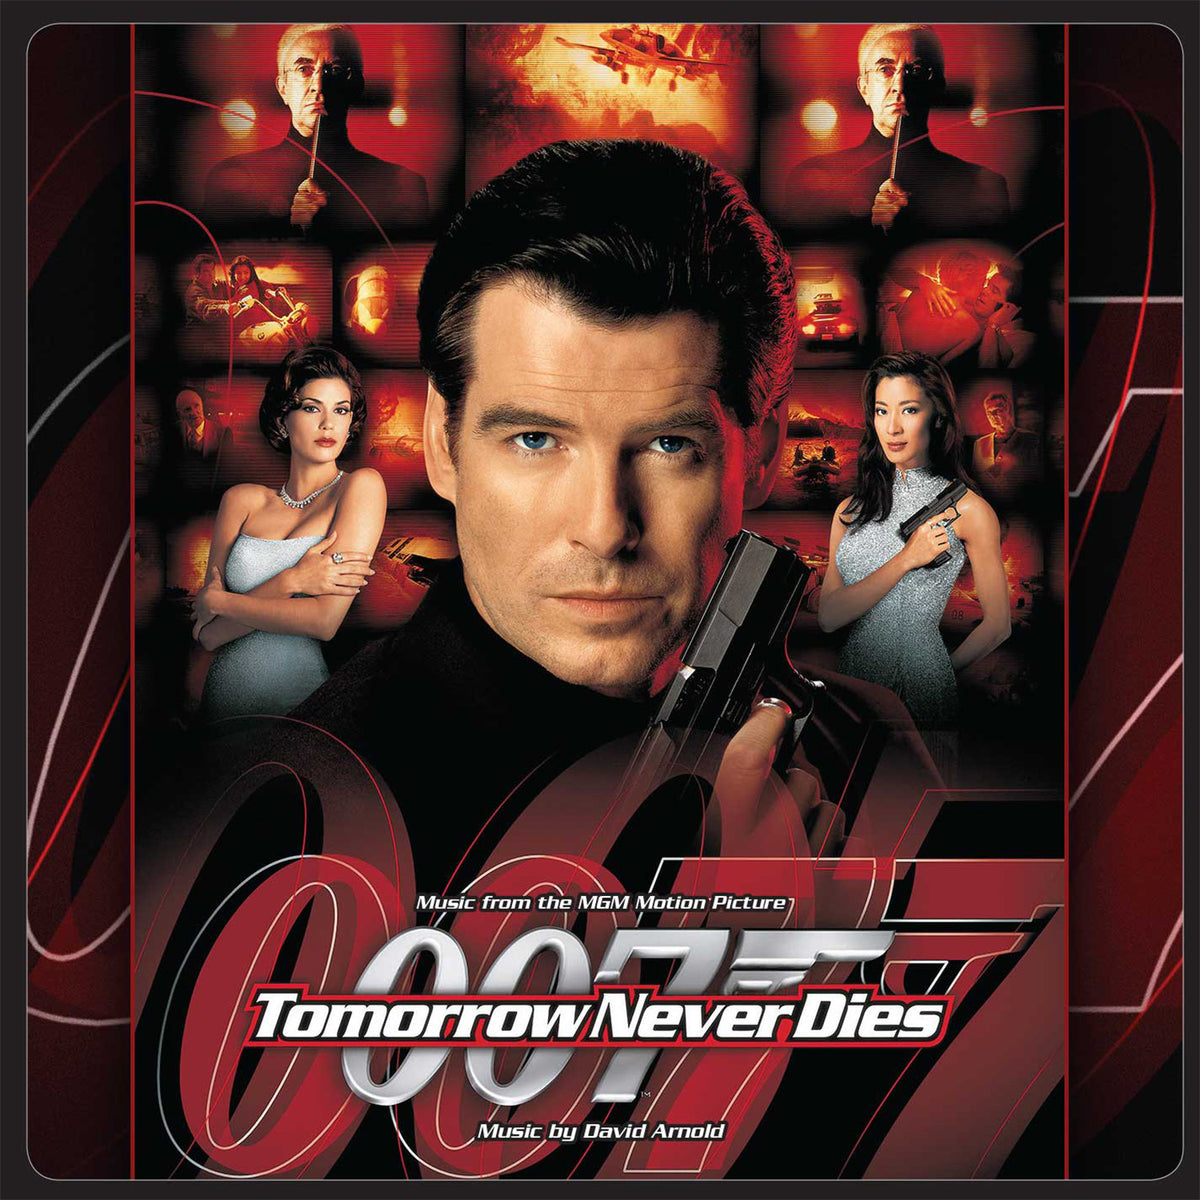 James Bond: Der Morgen stirbt nie - Doppel-CD-Set mit Soundtrack - Erweiterte, remasterte Ausgabe